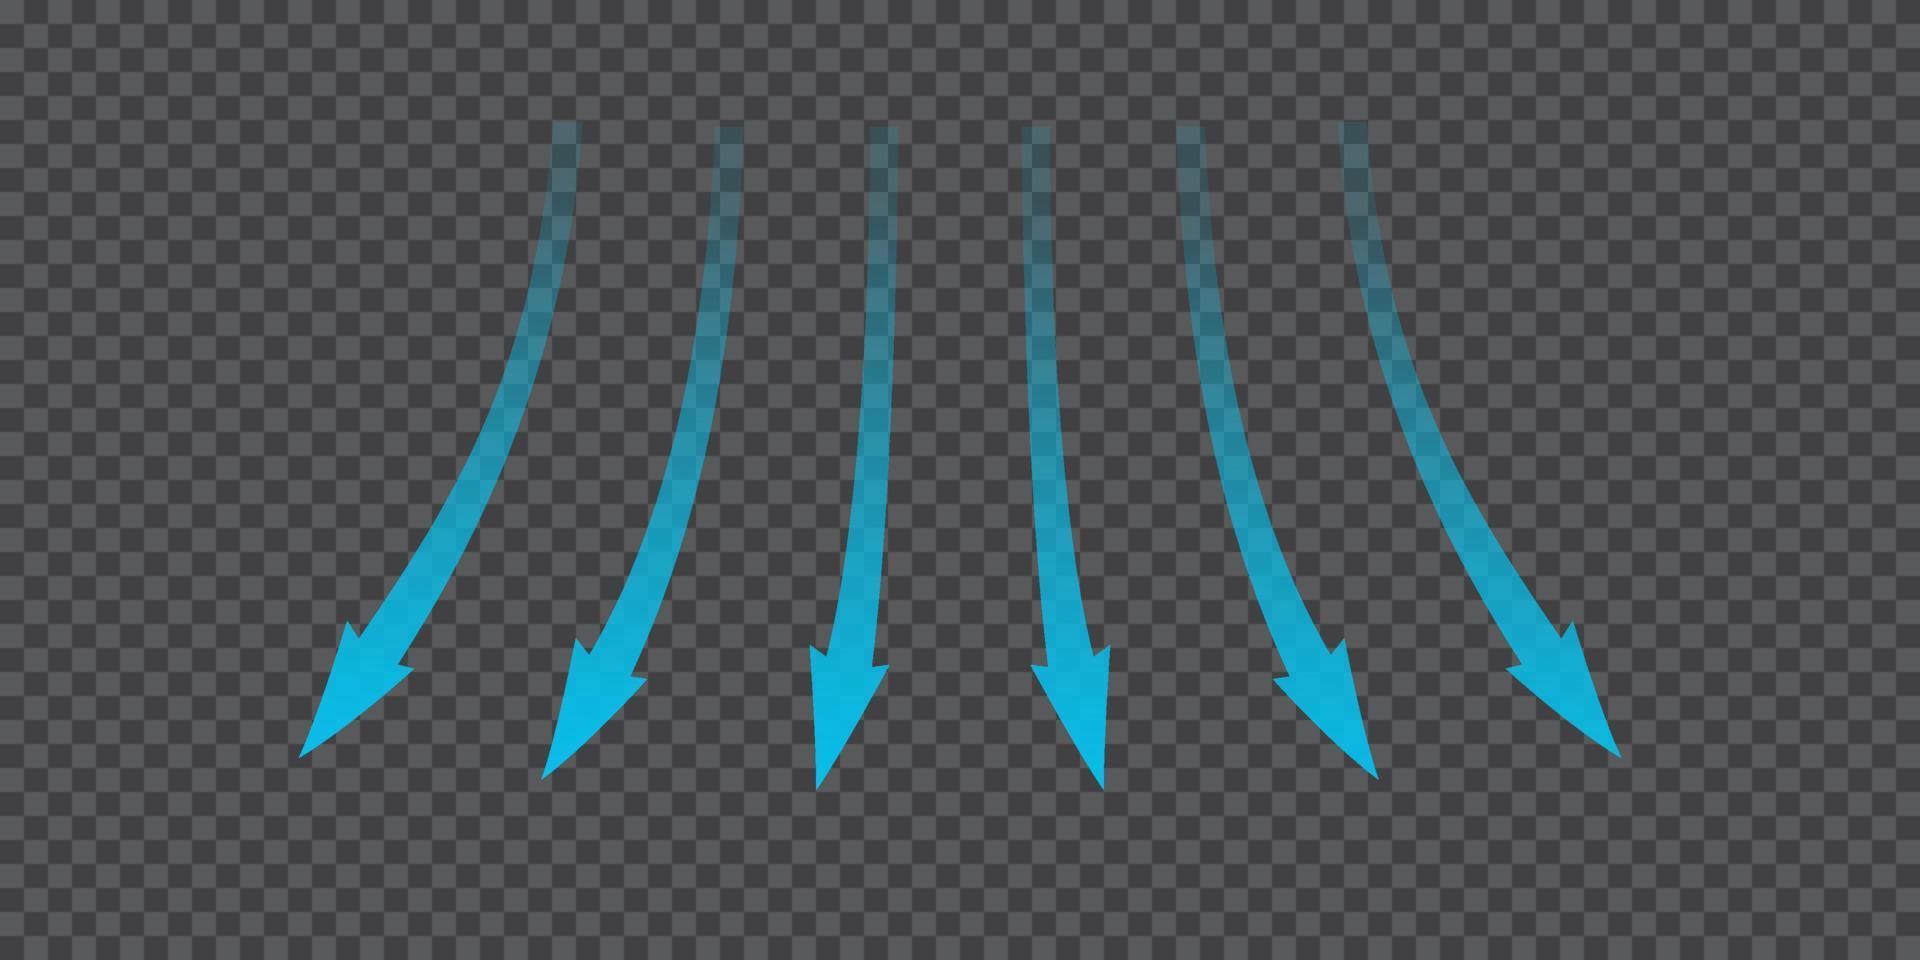 flusso d'aria. frecce blu che mostrano la direzione del movimento dell'aria. frecce di direzione del vento. flusso fresco blu freddo dal balsamo. illustrazione vettoriale isolato su sfondo